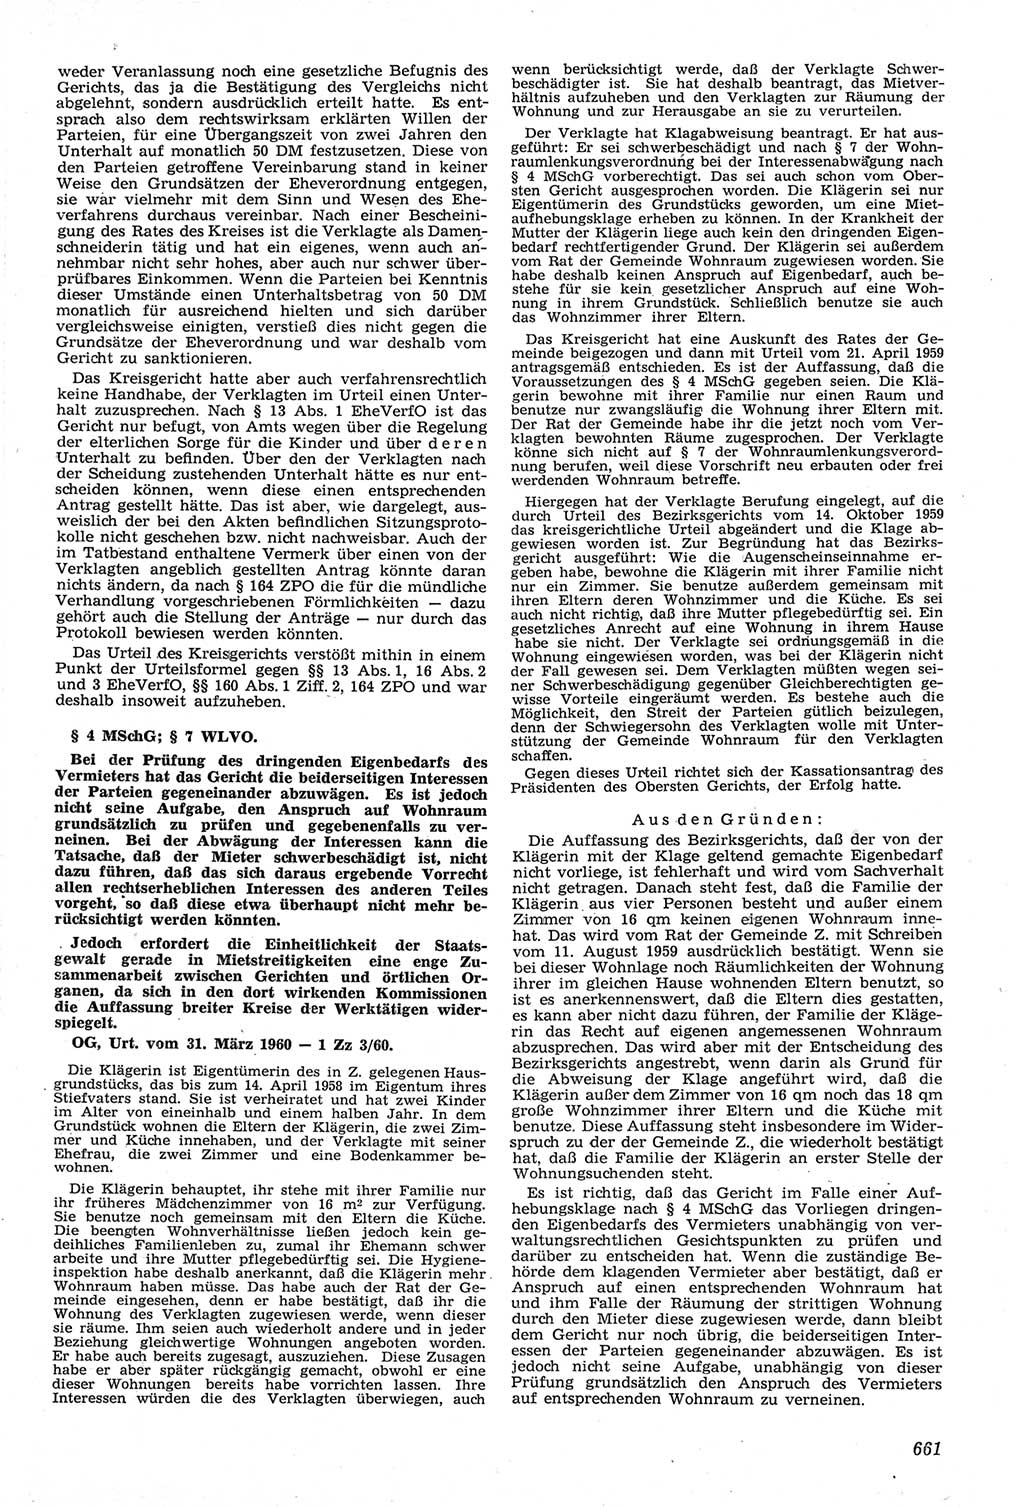 Neue Justiz (NJ), Zeitschrift für Recht und Rechtswissenschaft [Deutsche Demokratische Republik (DDR)], 14. Jahrgang 1960, Seite 661 (NJ DDR 1960, S. 661)